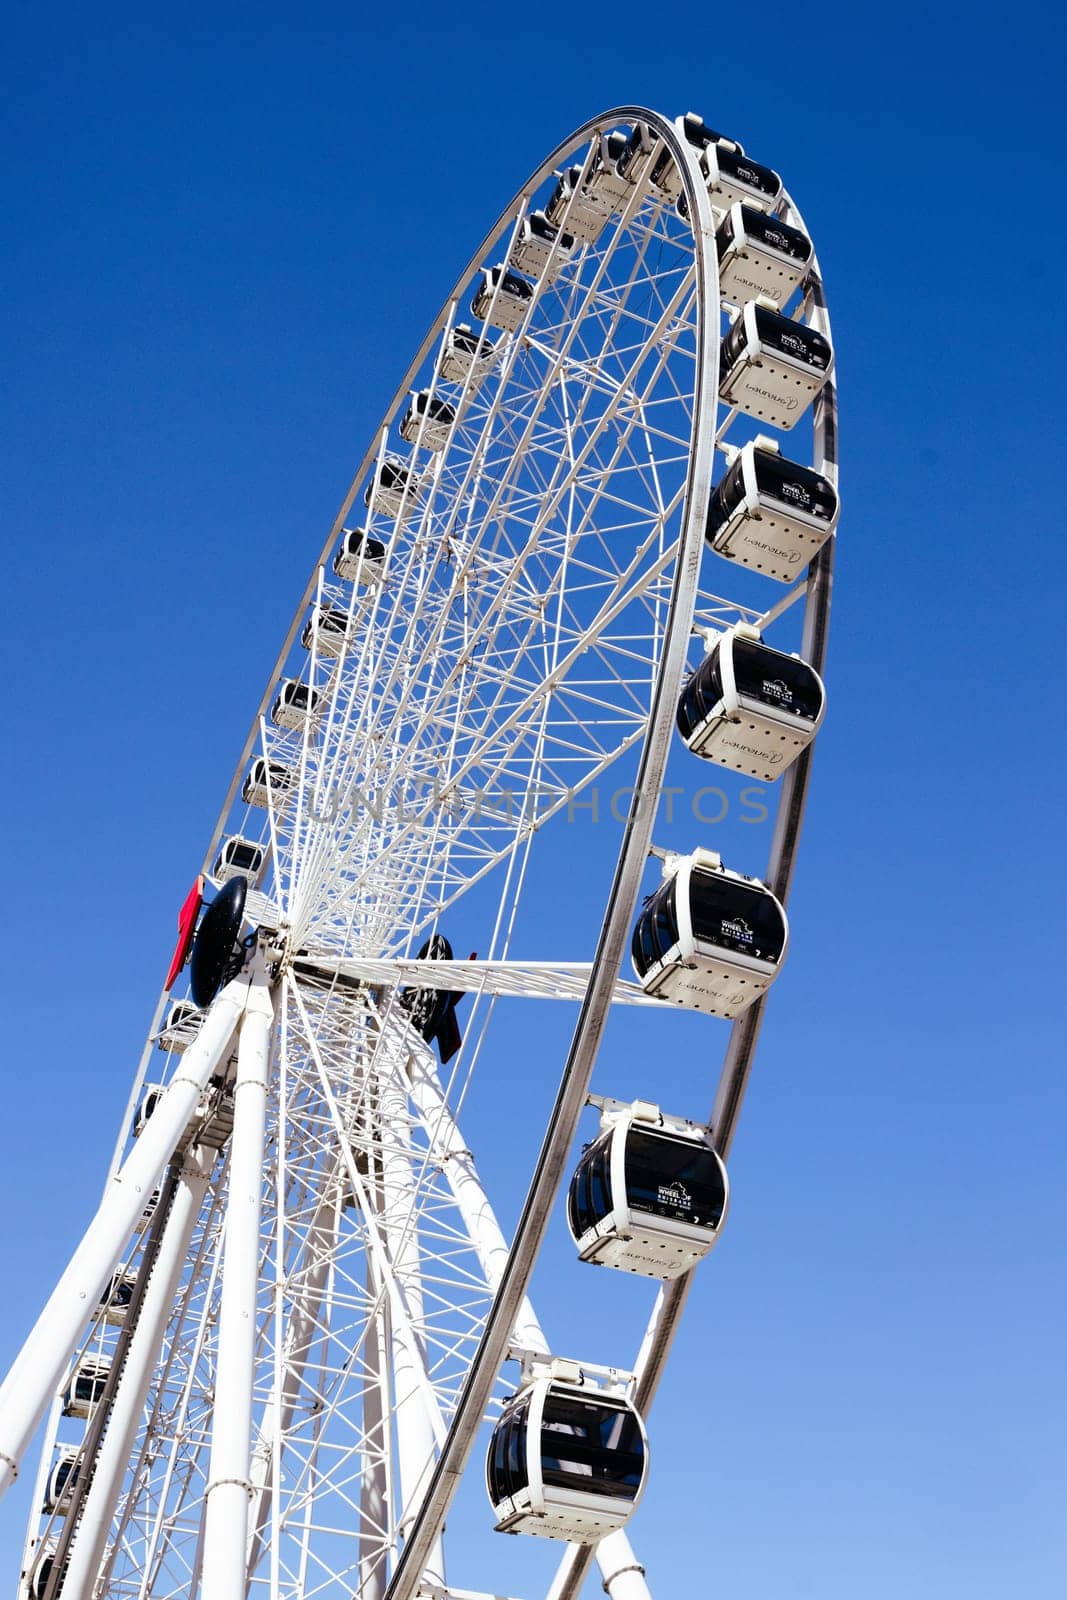 The Wheel of Brisbane in Brisbane Australia by FiledIMAGE